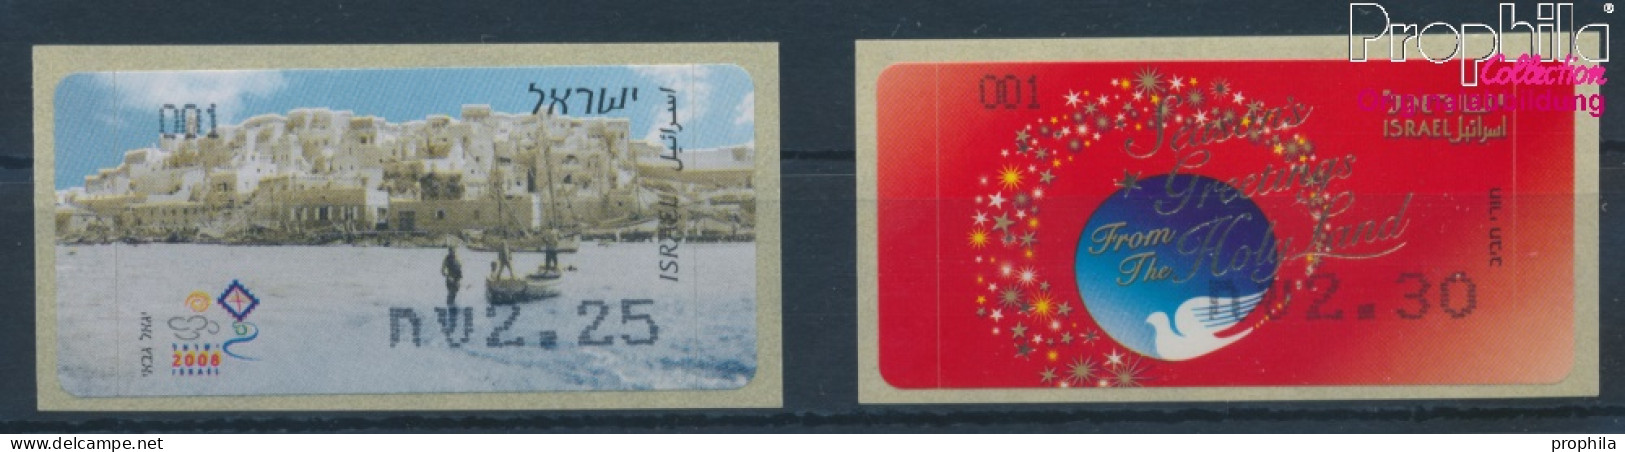 Israel ATM59-ATM60 Postfrisch 2008 Automatenmarken (10369157 - Automatenmarken (Frama)